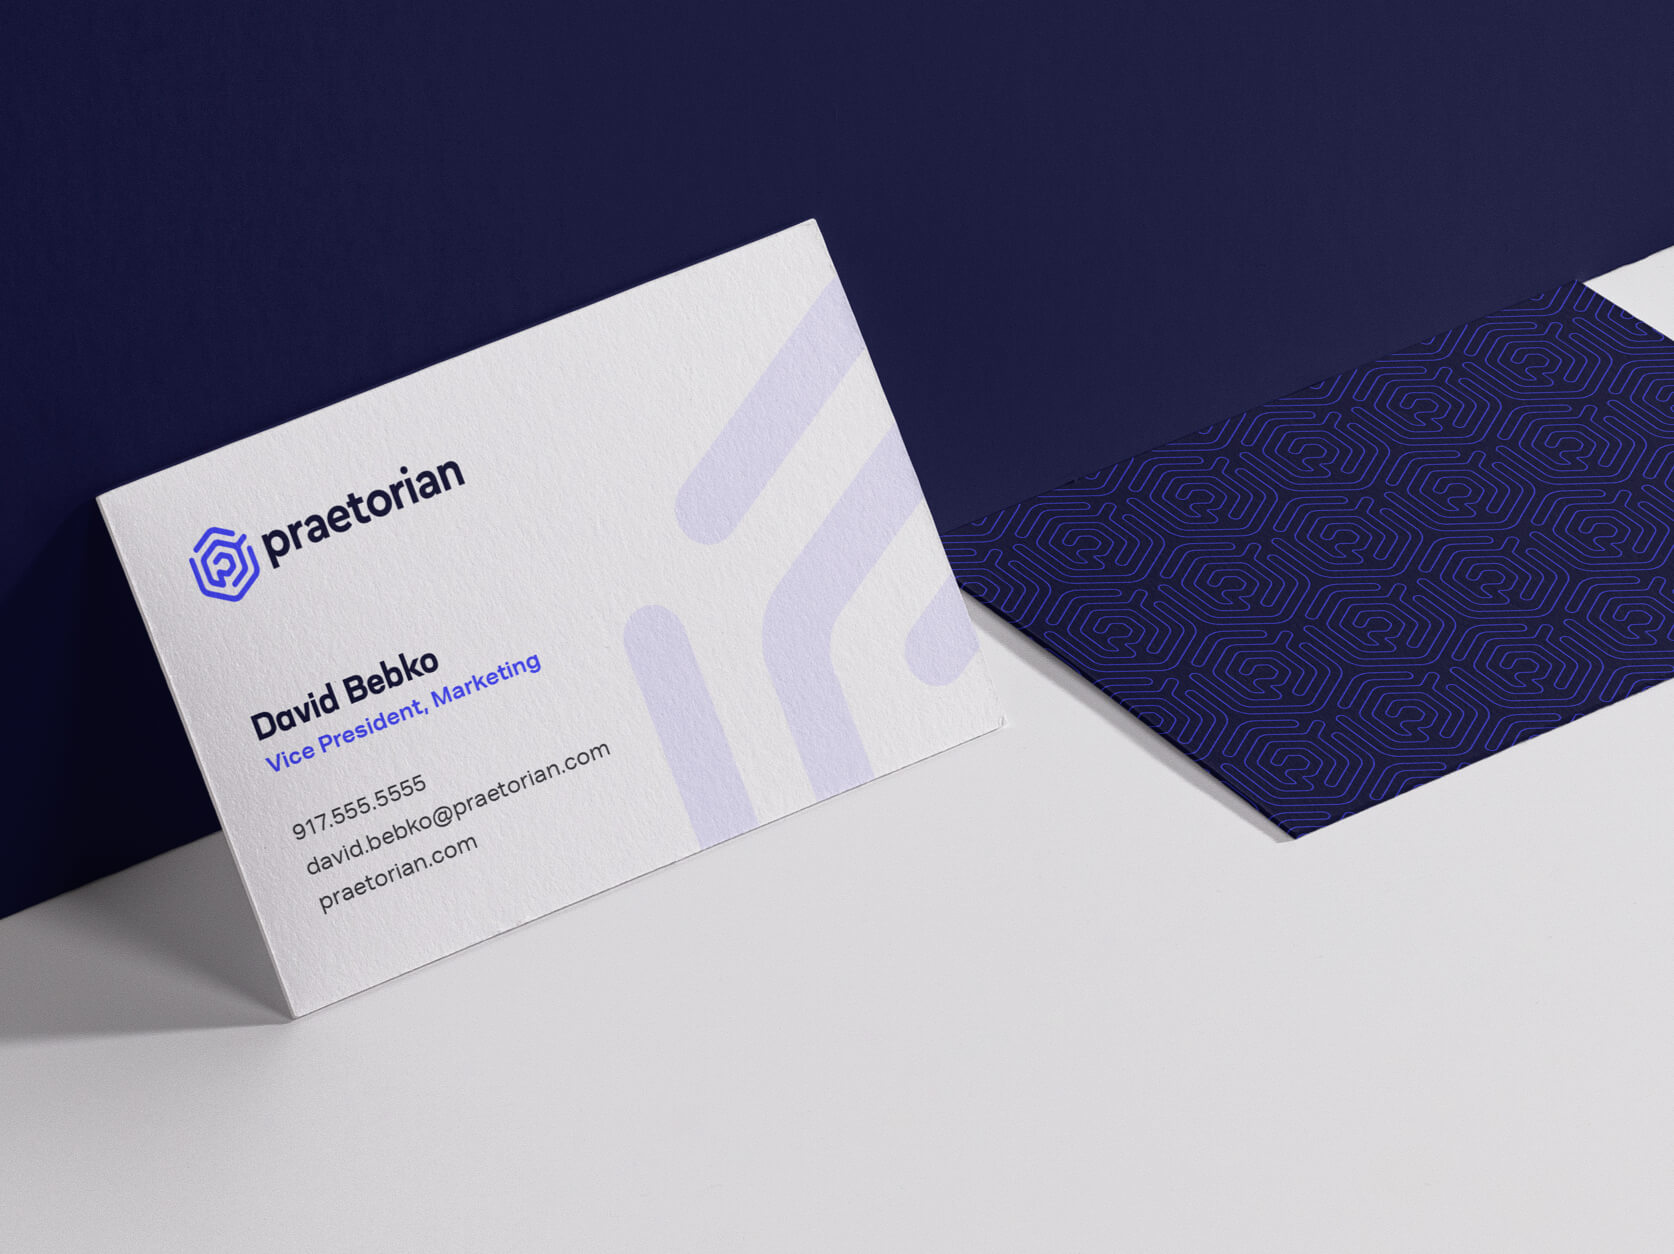 Praetorian Business Card Design